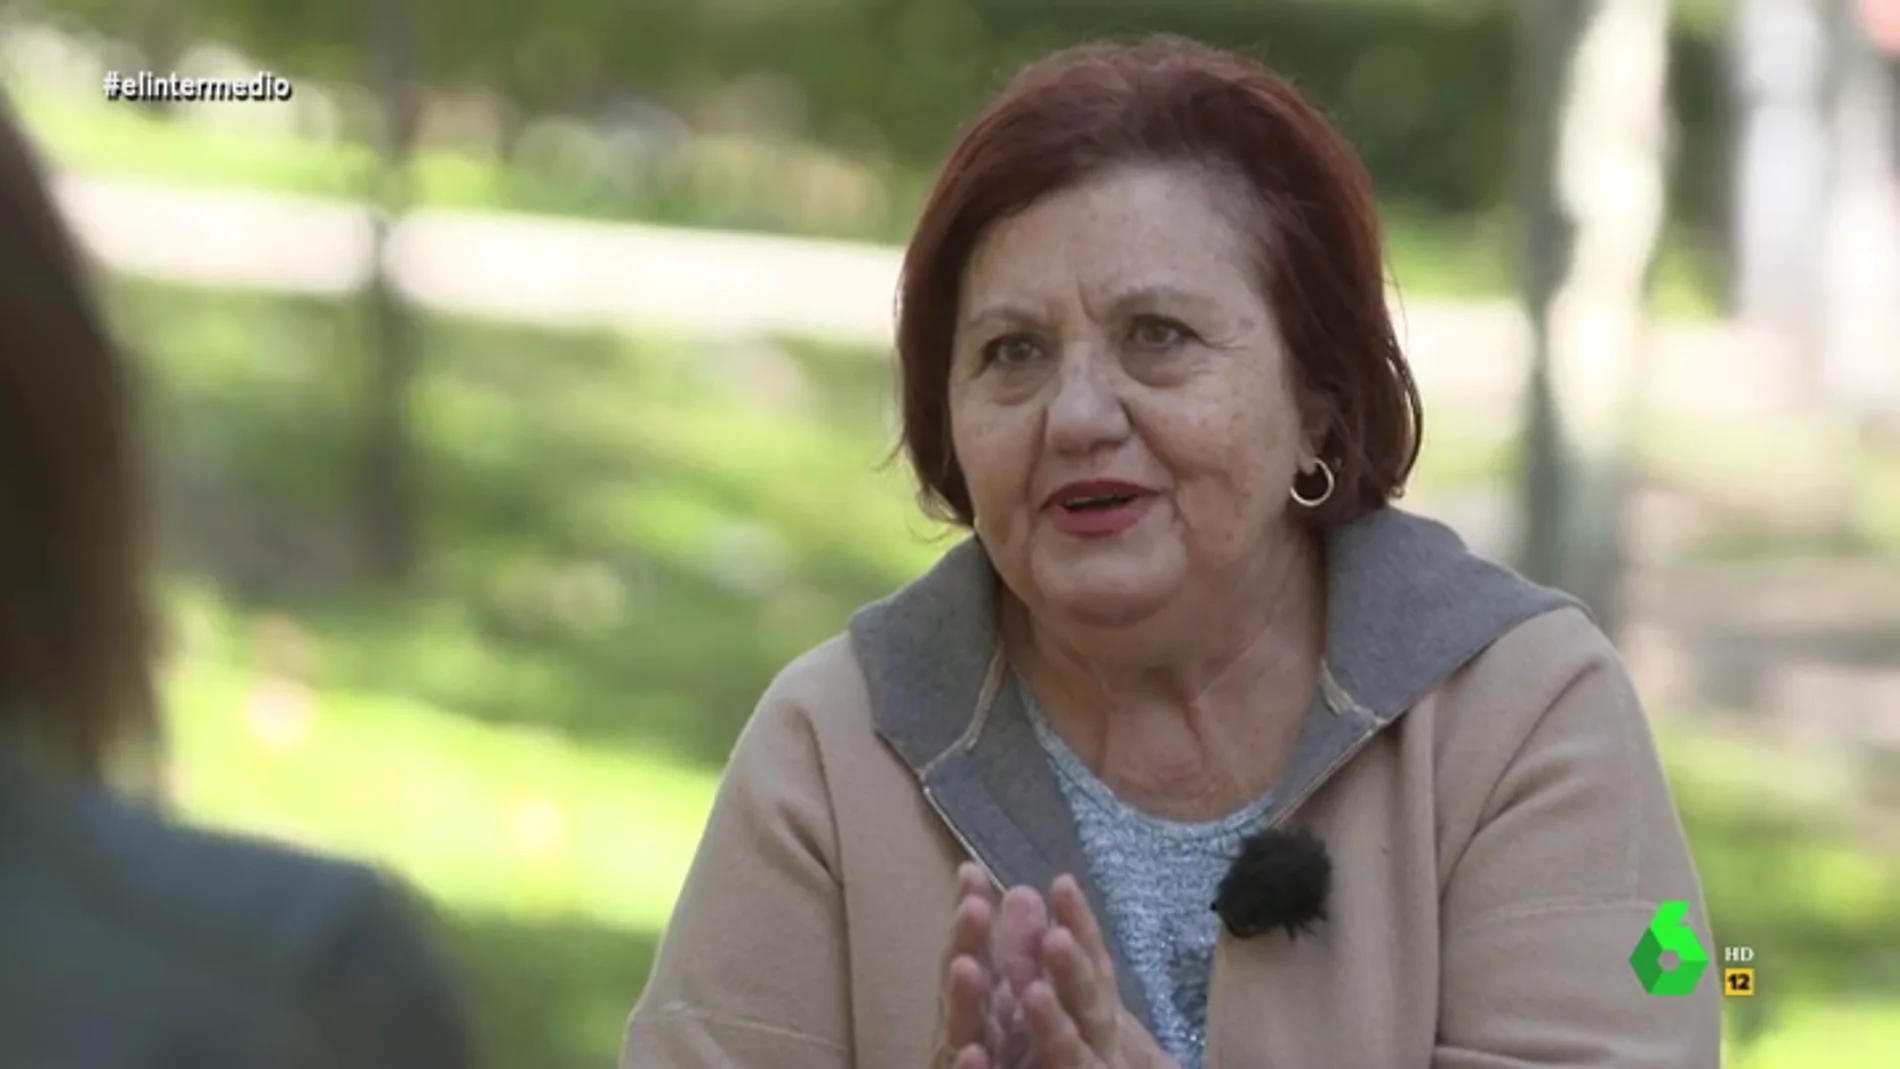 Ena Velasco, jubilada, explica en El Intermedio cómo ha sido el confinamiento para las personas mayores.